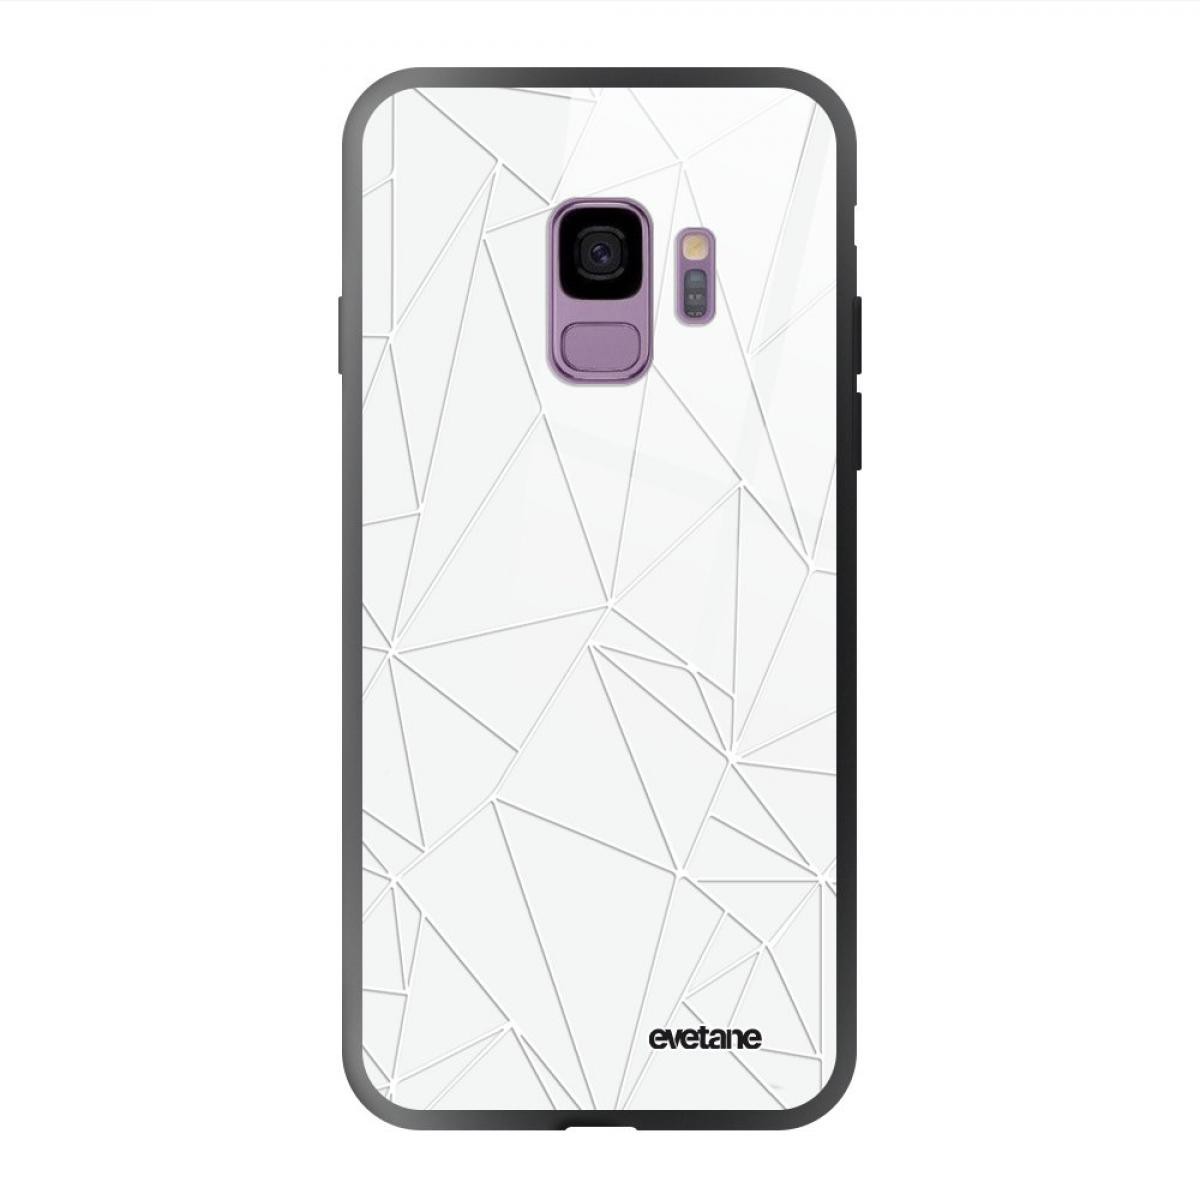 Evetane - Coque Galaxy S9 soft touch noir effet glossy Outline Design Evetane - Coque, étui smartphone